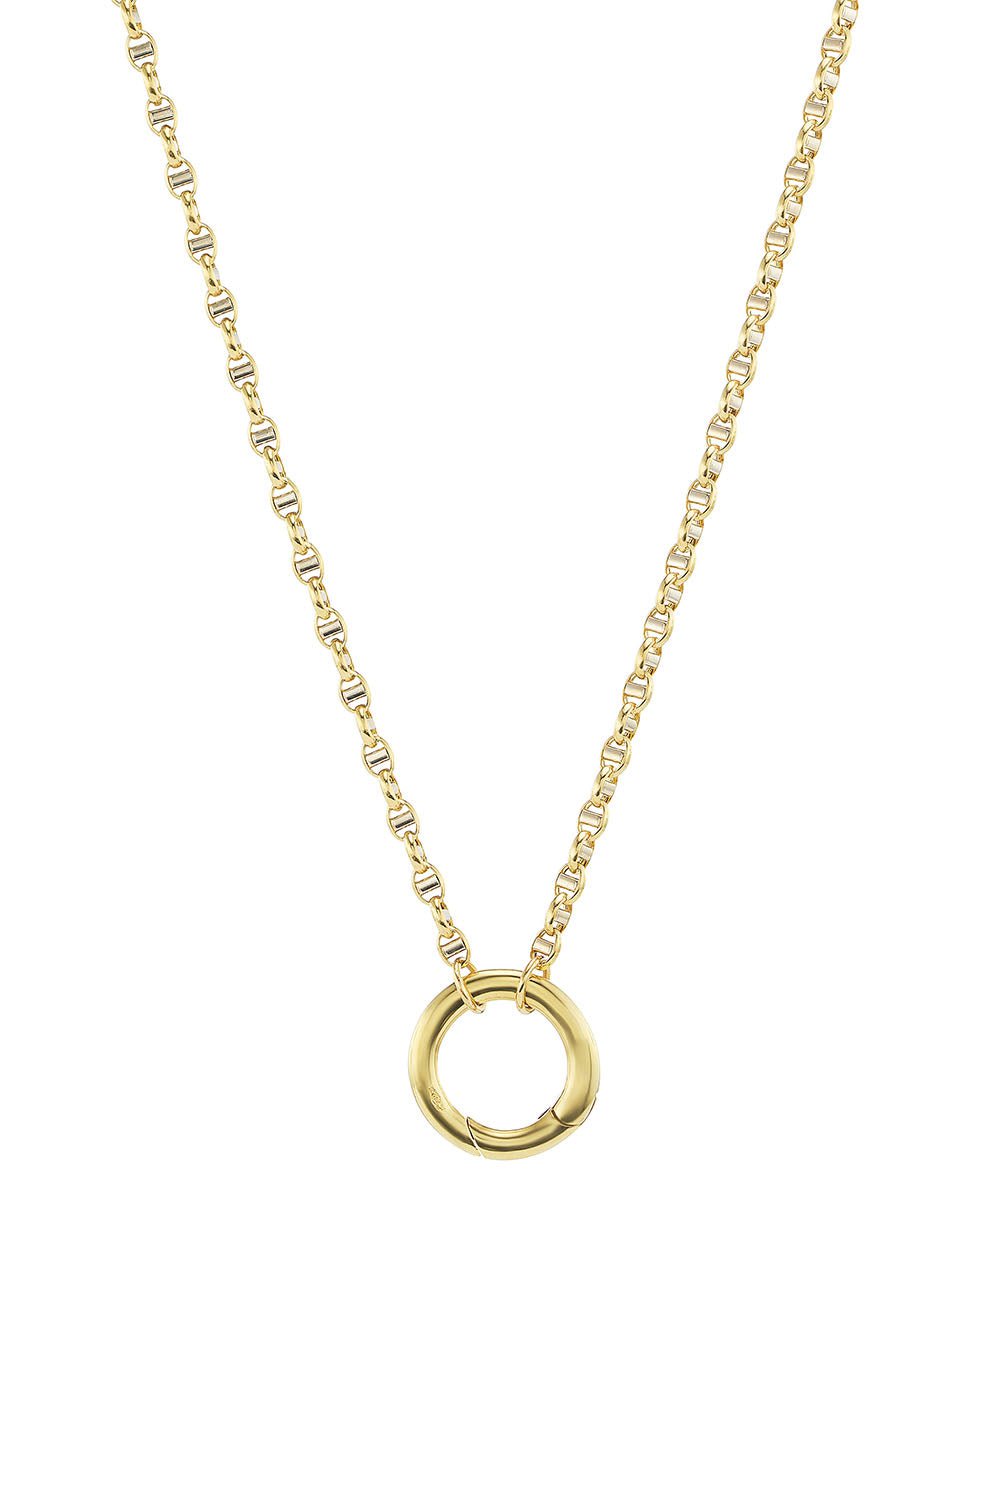 ANNA MACCIERI ROSSI-Marina Chain Necklace-YELLOW GOLD